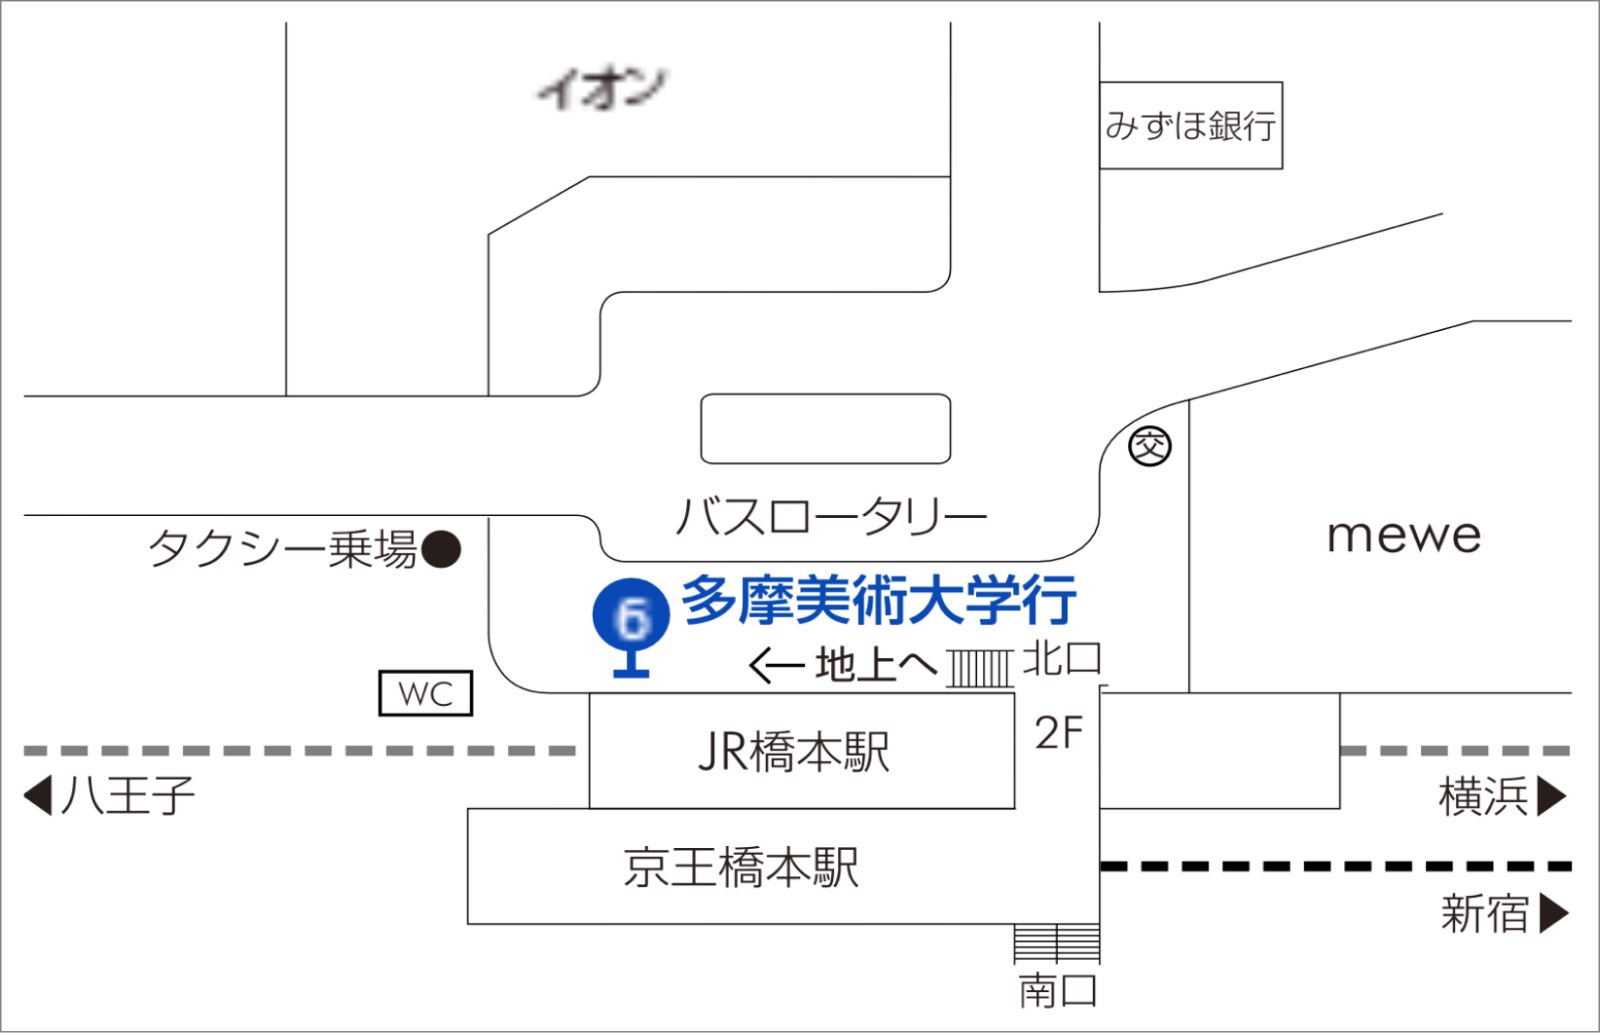 橋本駅北口、バスロータリーのイラスト地図。北口の地上階右手にある6番バス乗り場の位置が青い丸数字で示されている